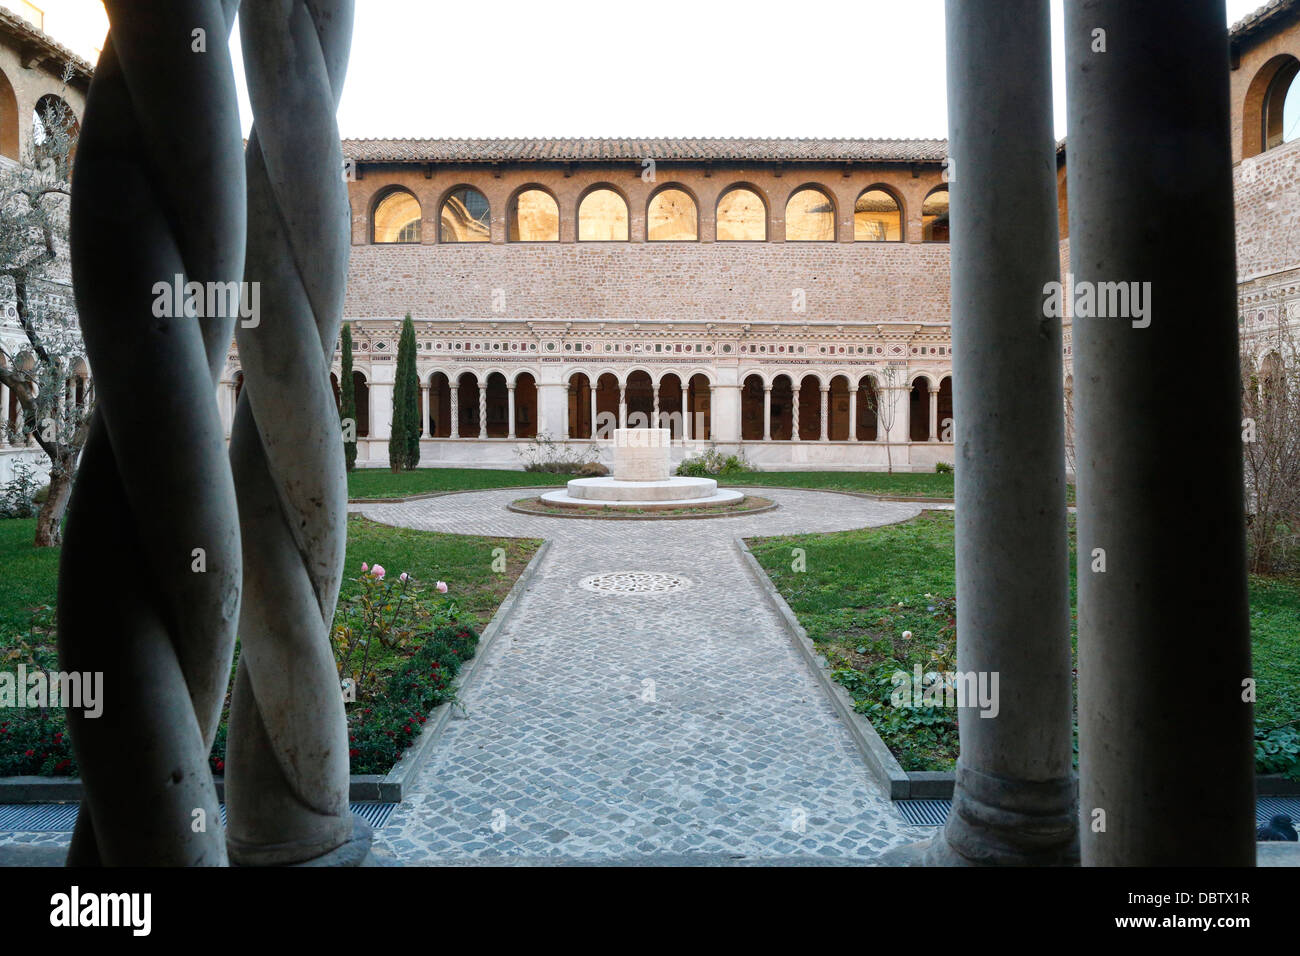 Colonne tortili di marmo in Vassaletto chiostri nell'arco papale Basilica di San Giovanni in Laterano, Roma, lazio, Italy Foto Stock